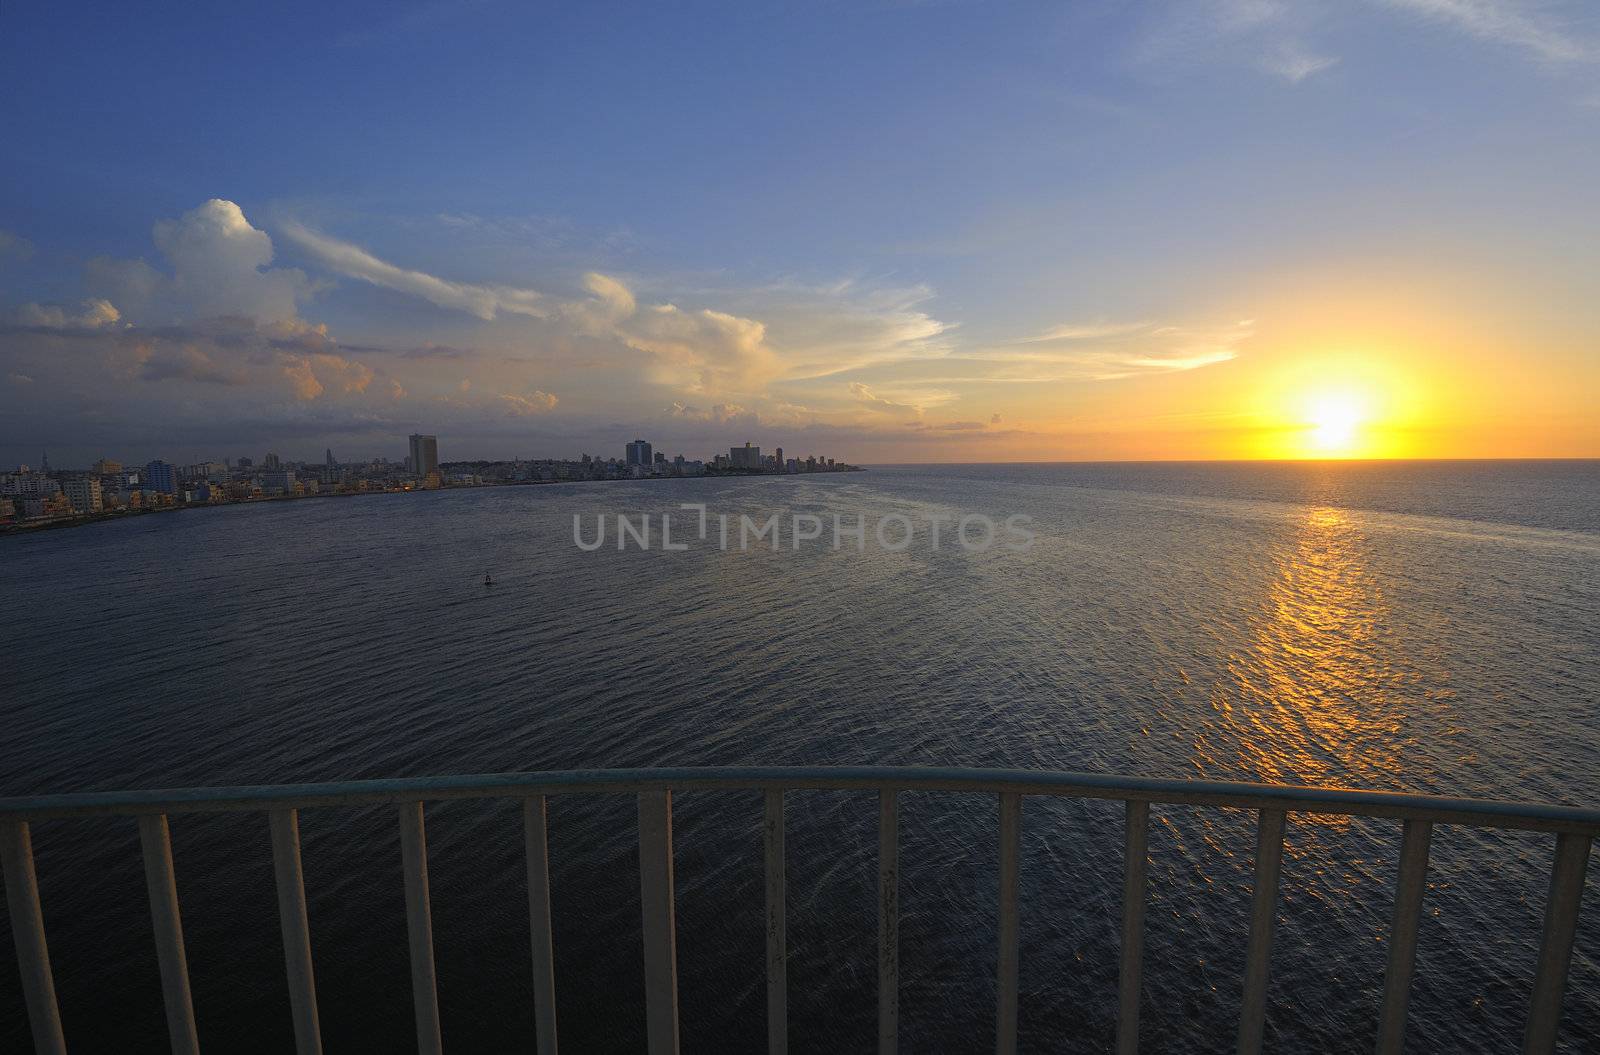 Havana bay entrance and city skyline at dusk with sun setting